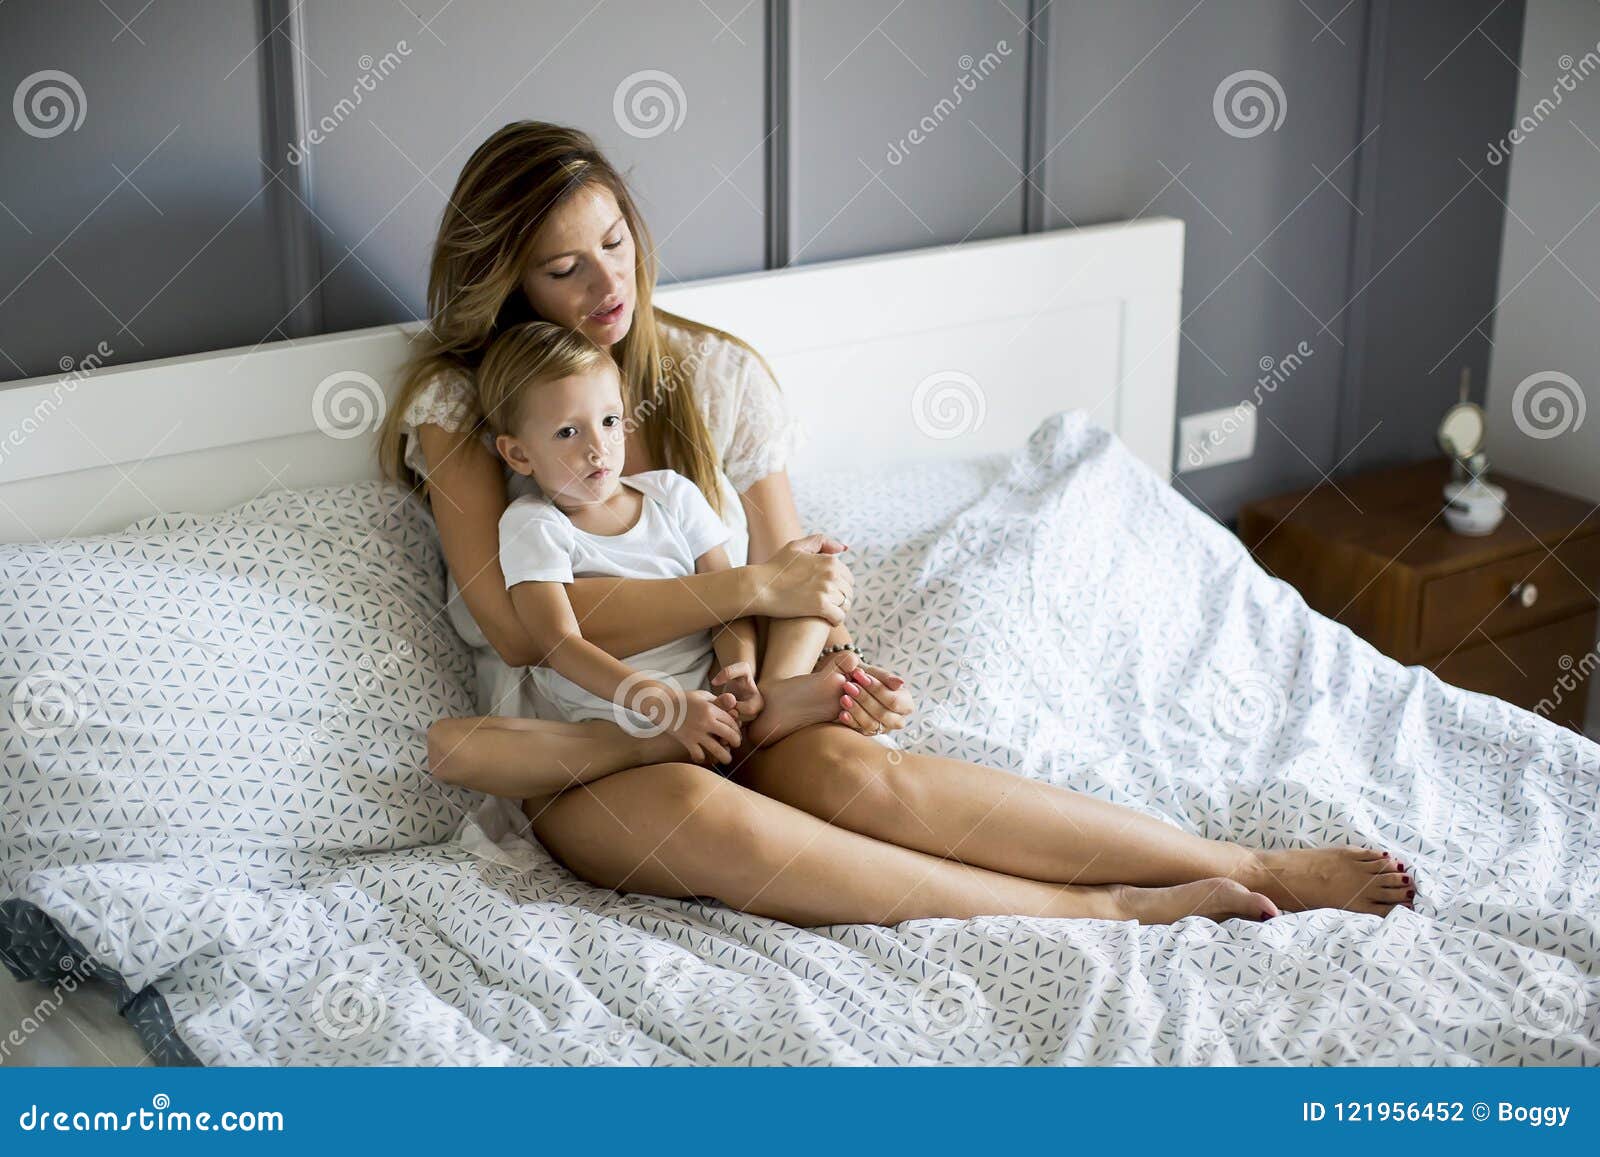 1 кровать с мамой. Молодые мамочки в постели. Фотосессия мама с сыном в постели. Молодая мама в постели. Сынишка с мамашей в постели.